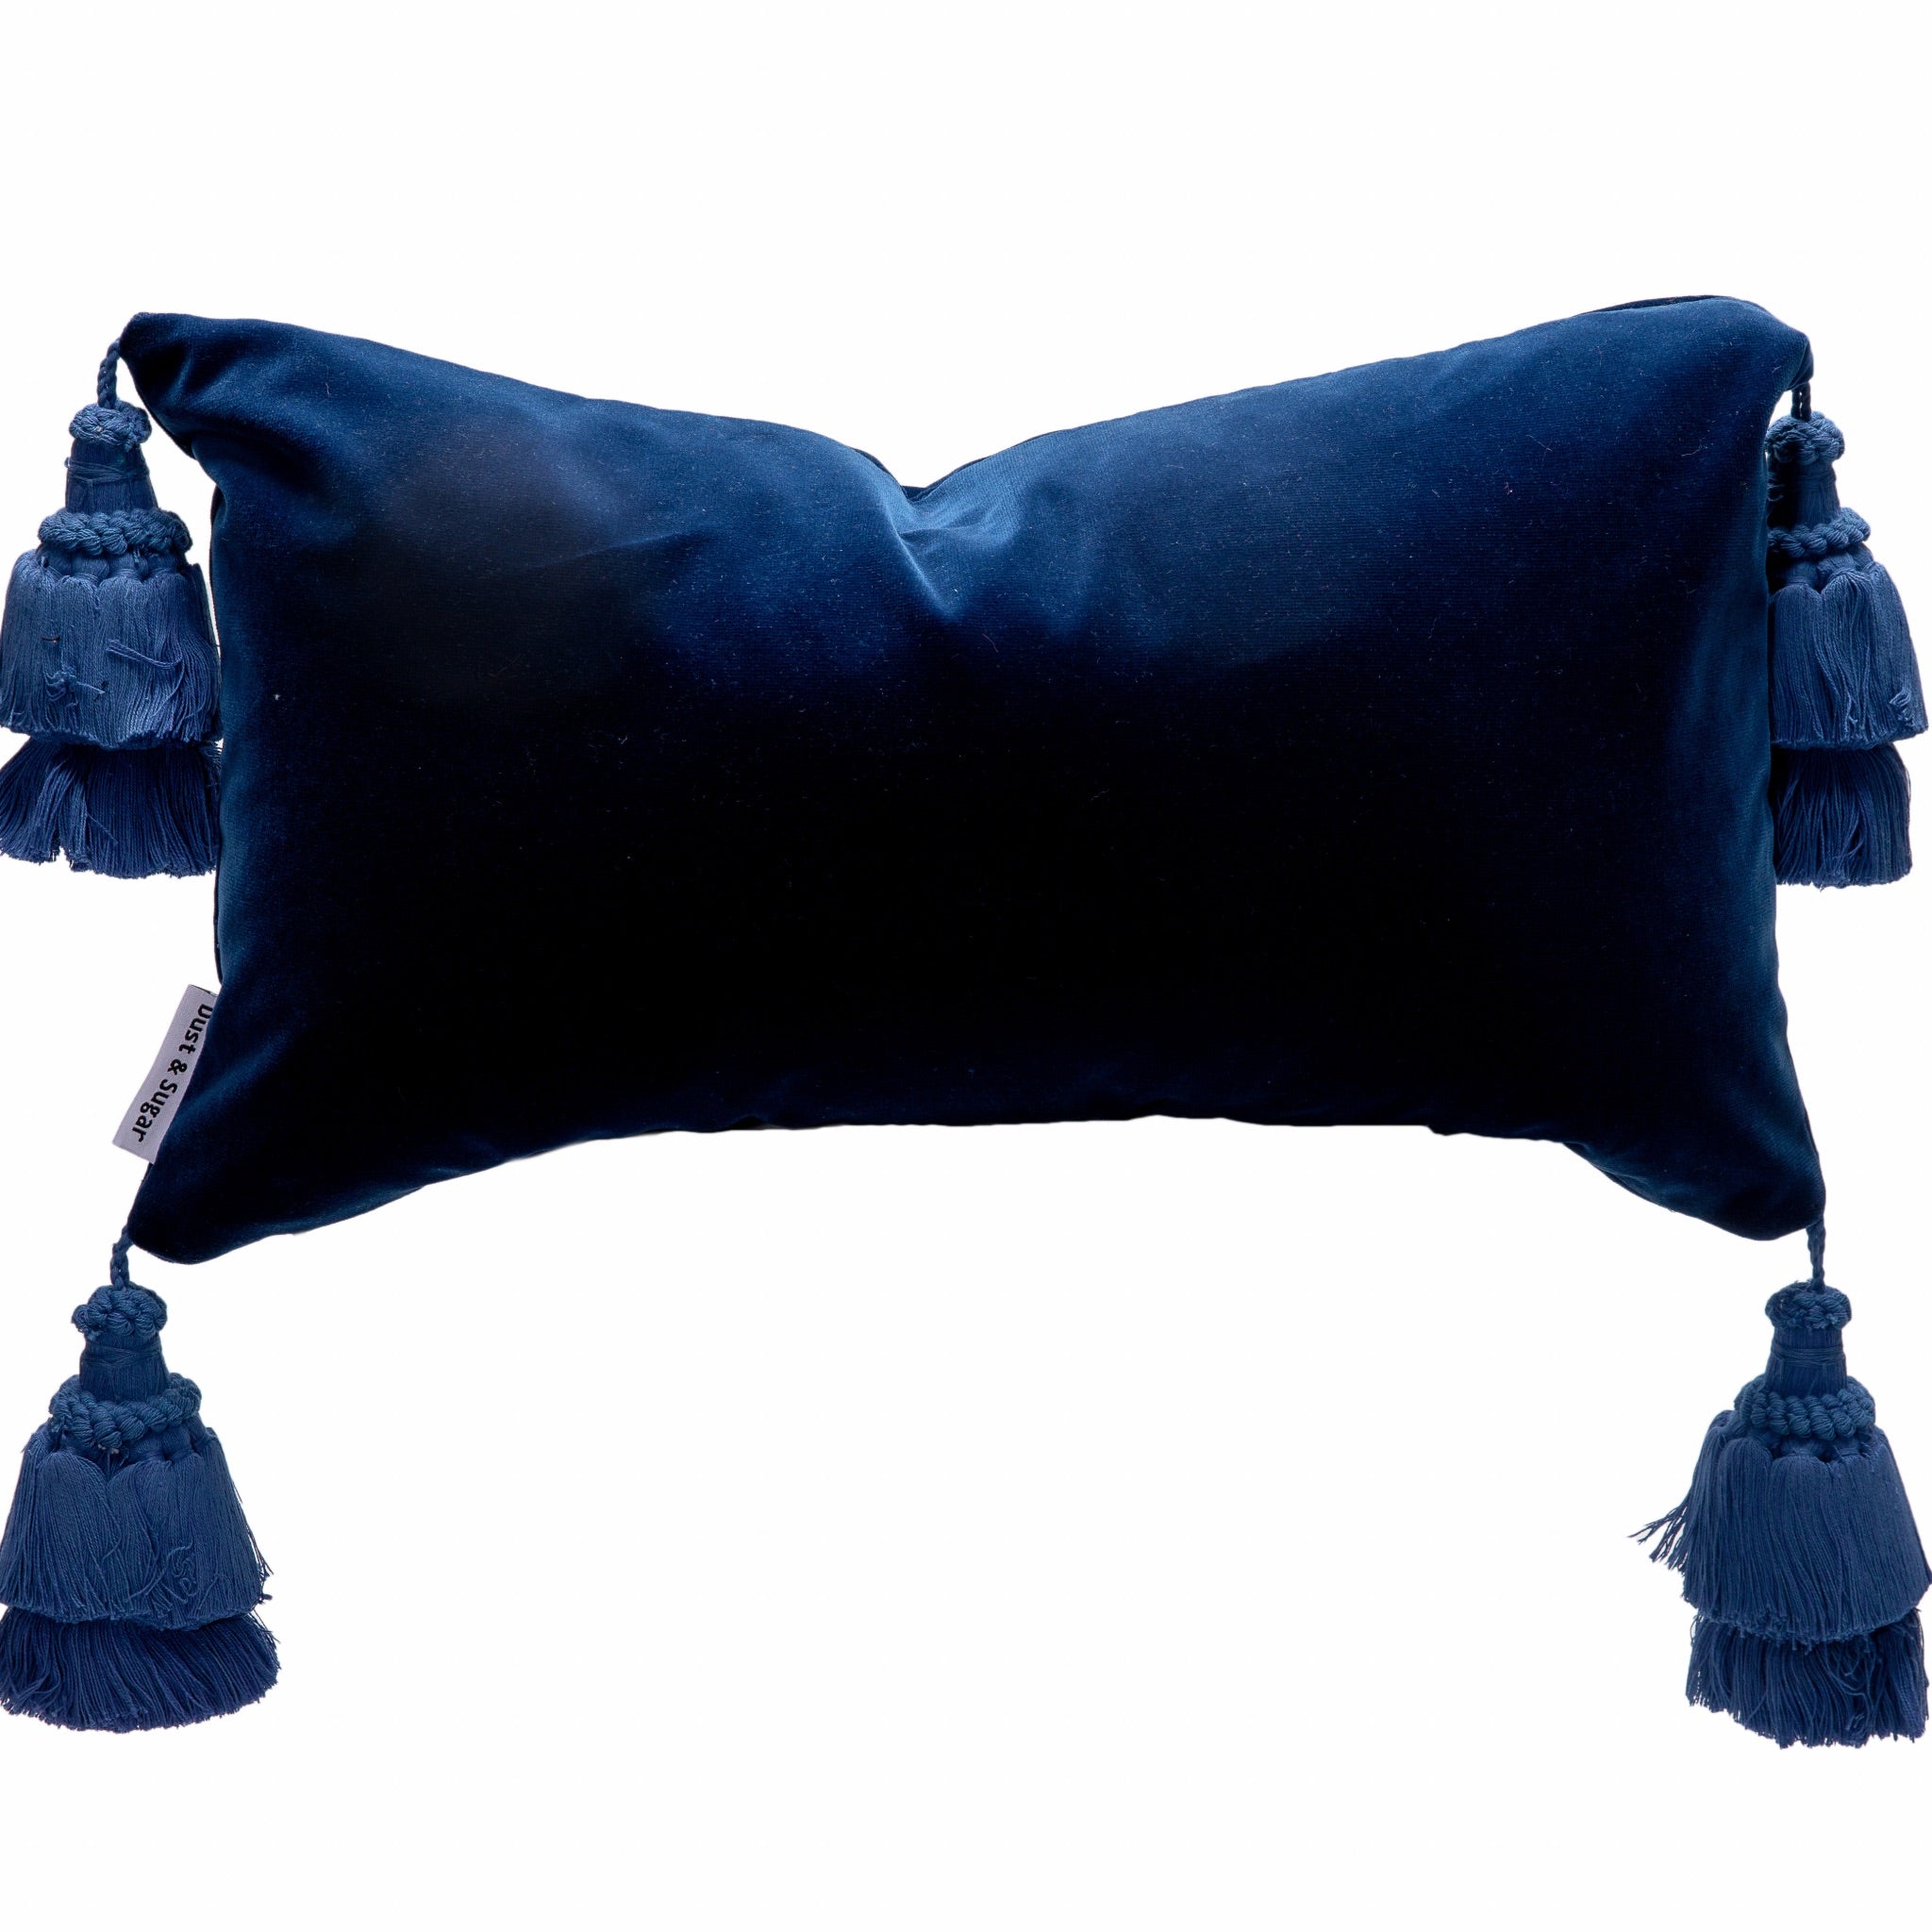 Blue Velvet Pillow Cover With Handmade Tassels